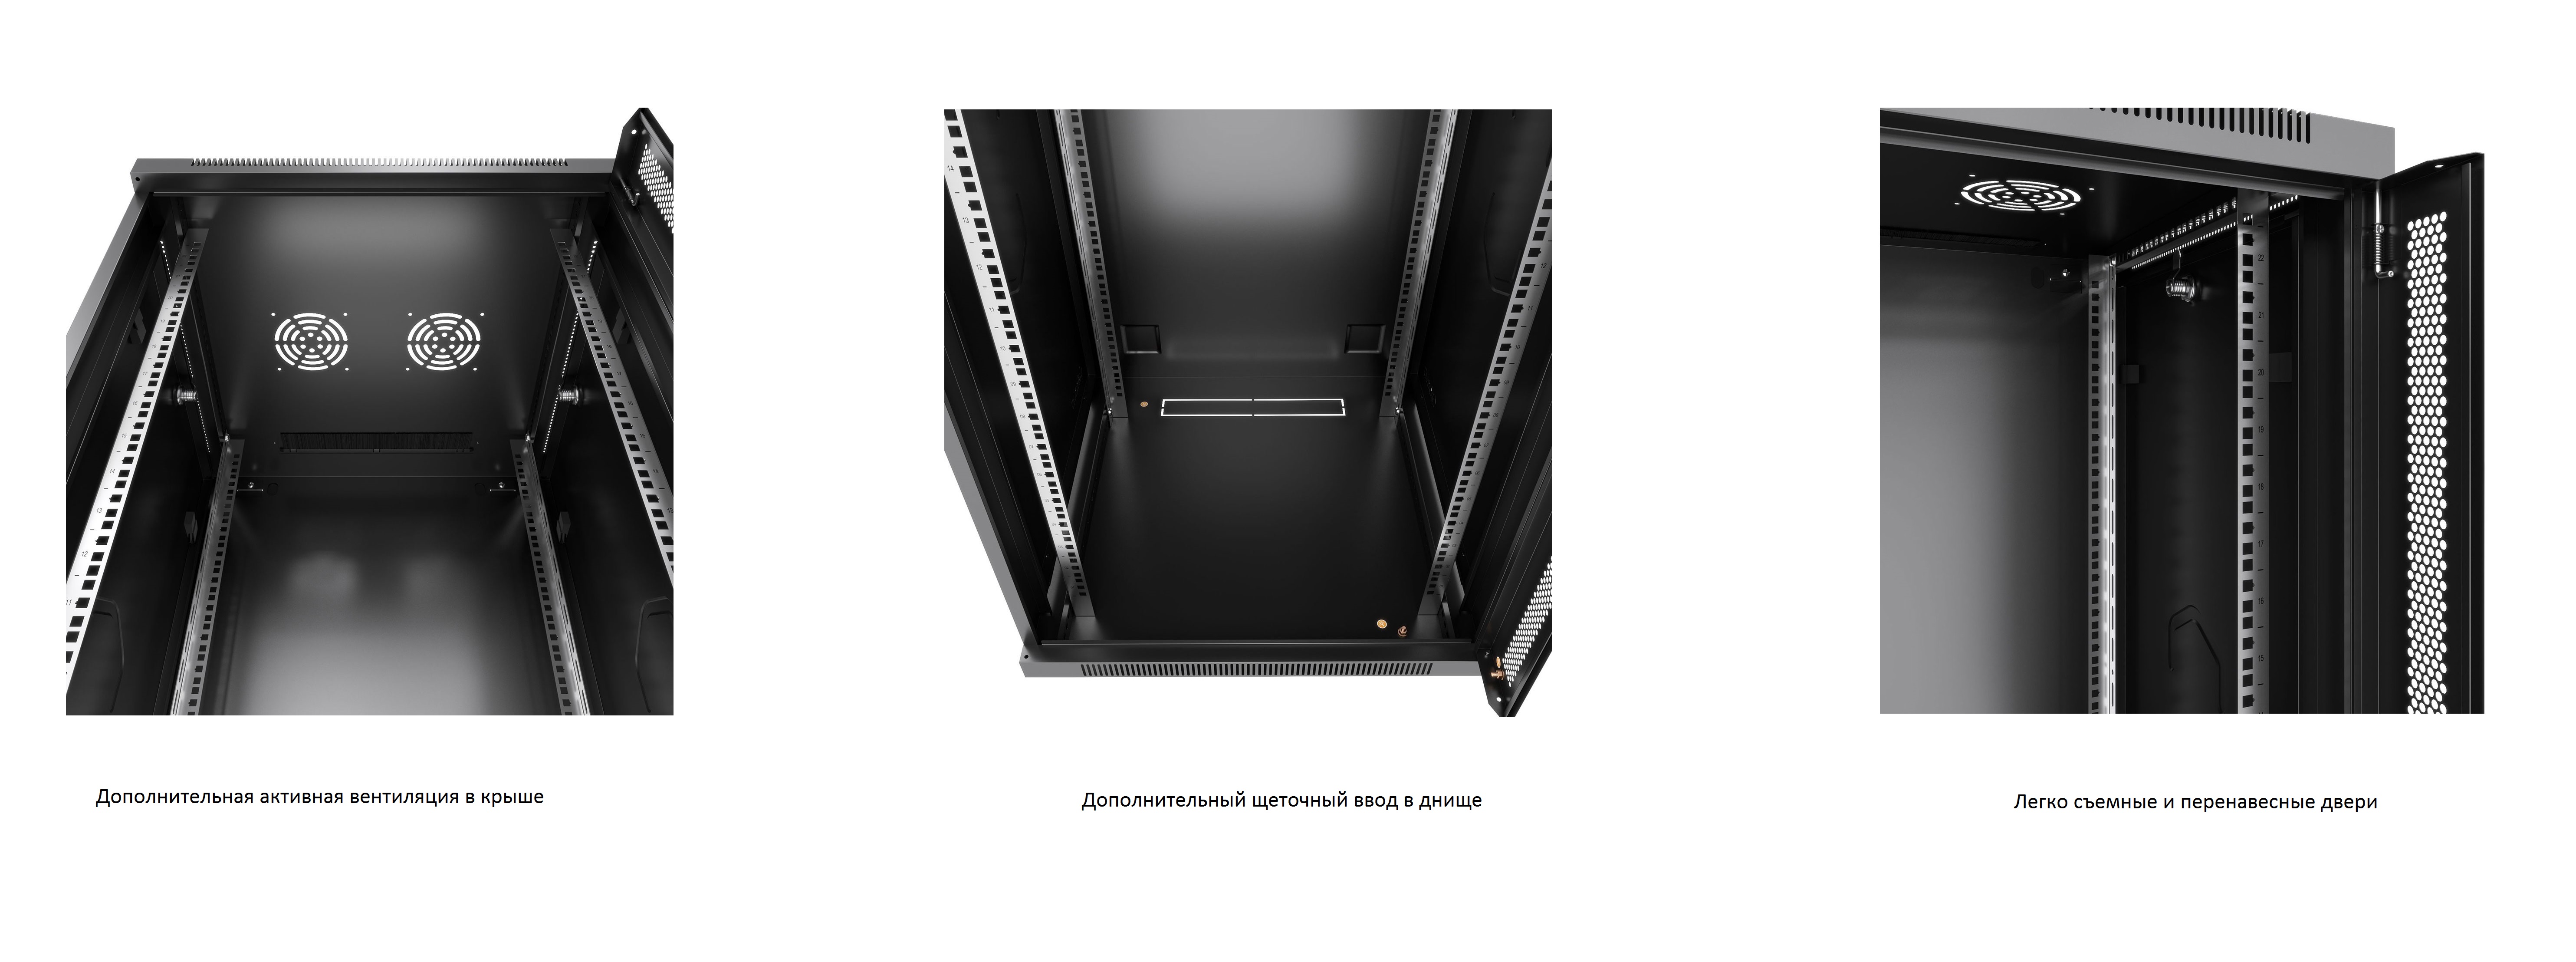 Дополнительные возможности телекоммуникационного настенного шкафа Cabeus 19 6U 600x350x368mm (ШхГхВ) дверь стекло, цвет черный (RAL 9004)